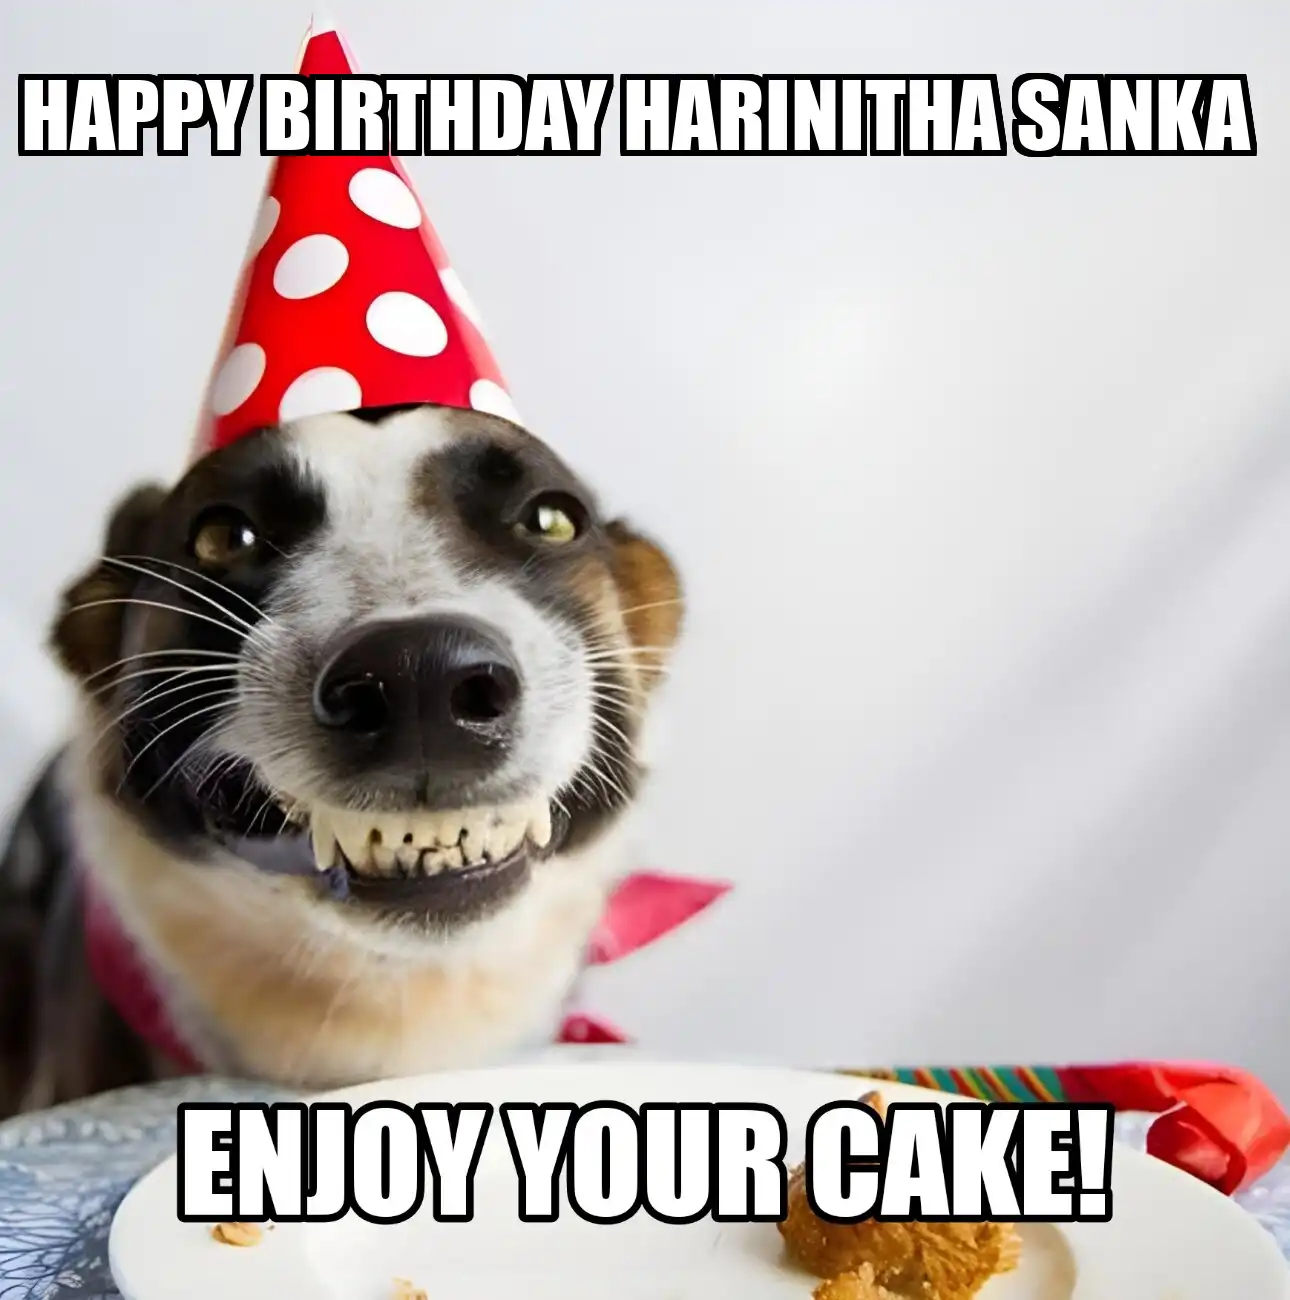 Happy Birthday Harinitha sanka Enjoy Your Cake Dog Meme